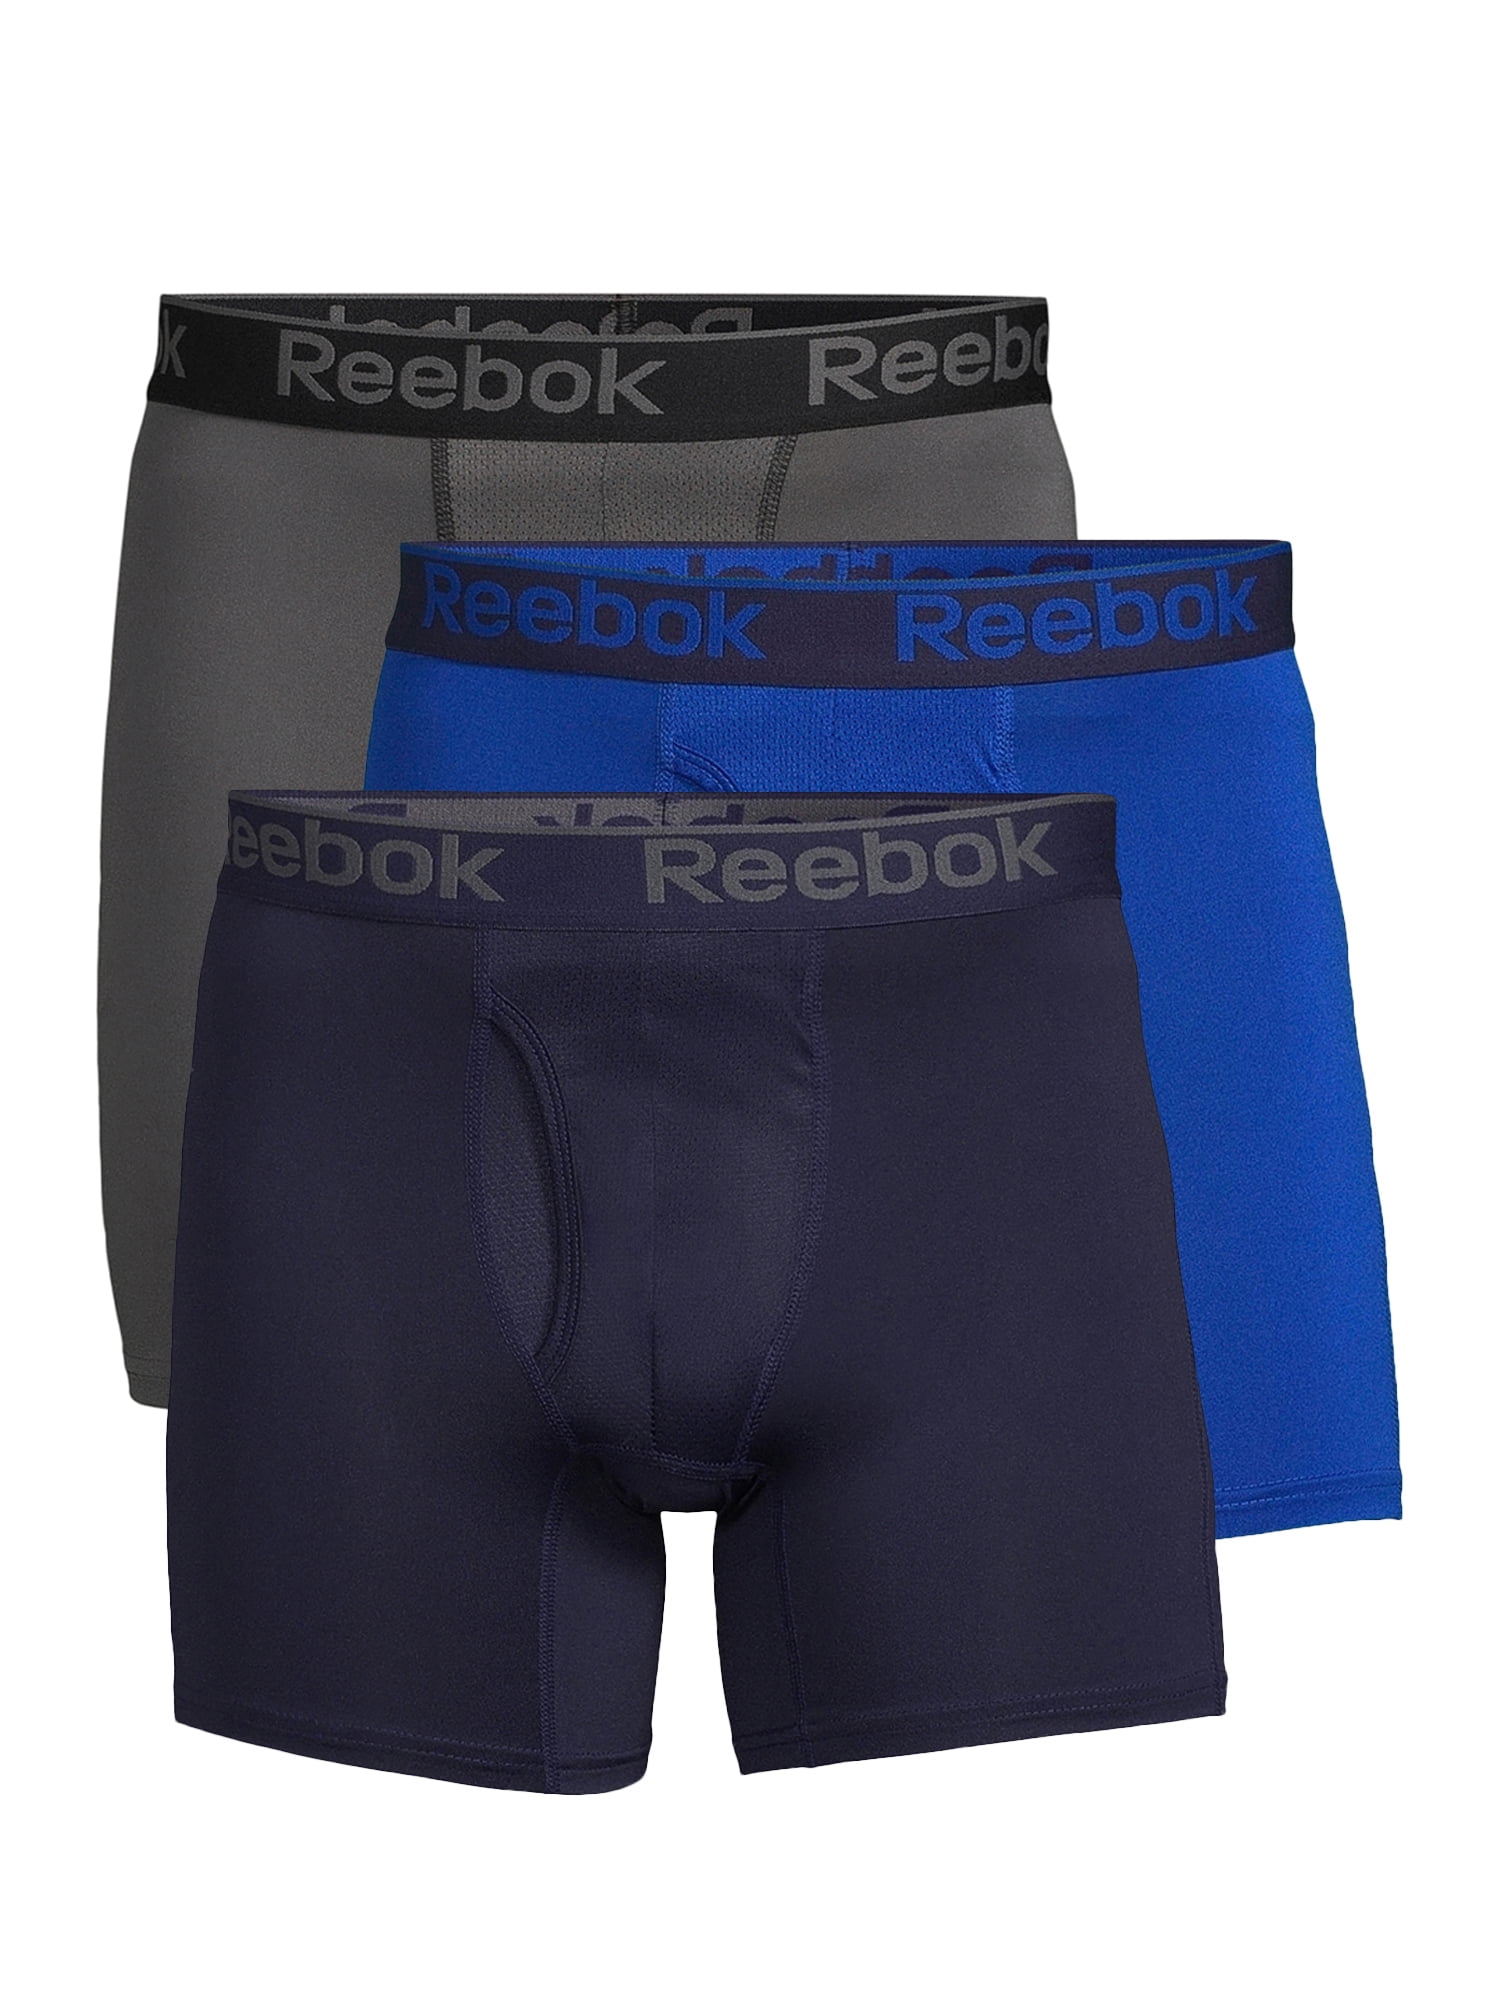 Reebok Men's Pro Series Performance Boxer Brief Underwear 6", Pack - Walmart.com